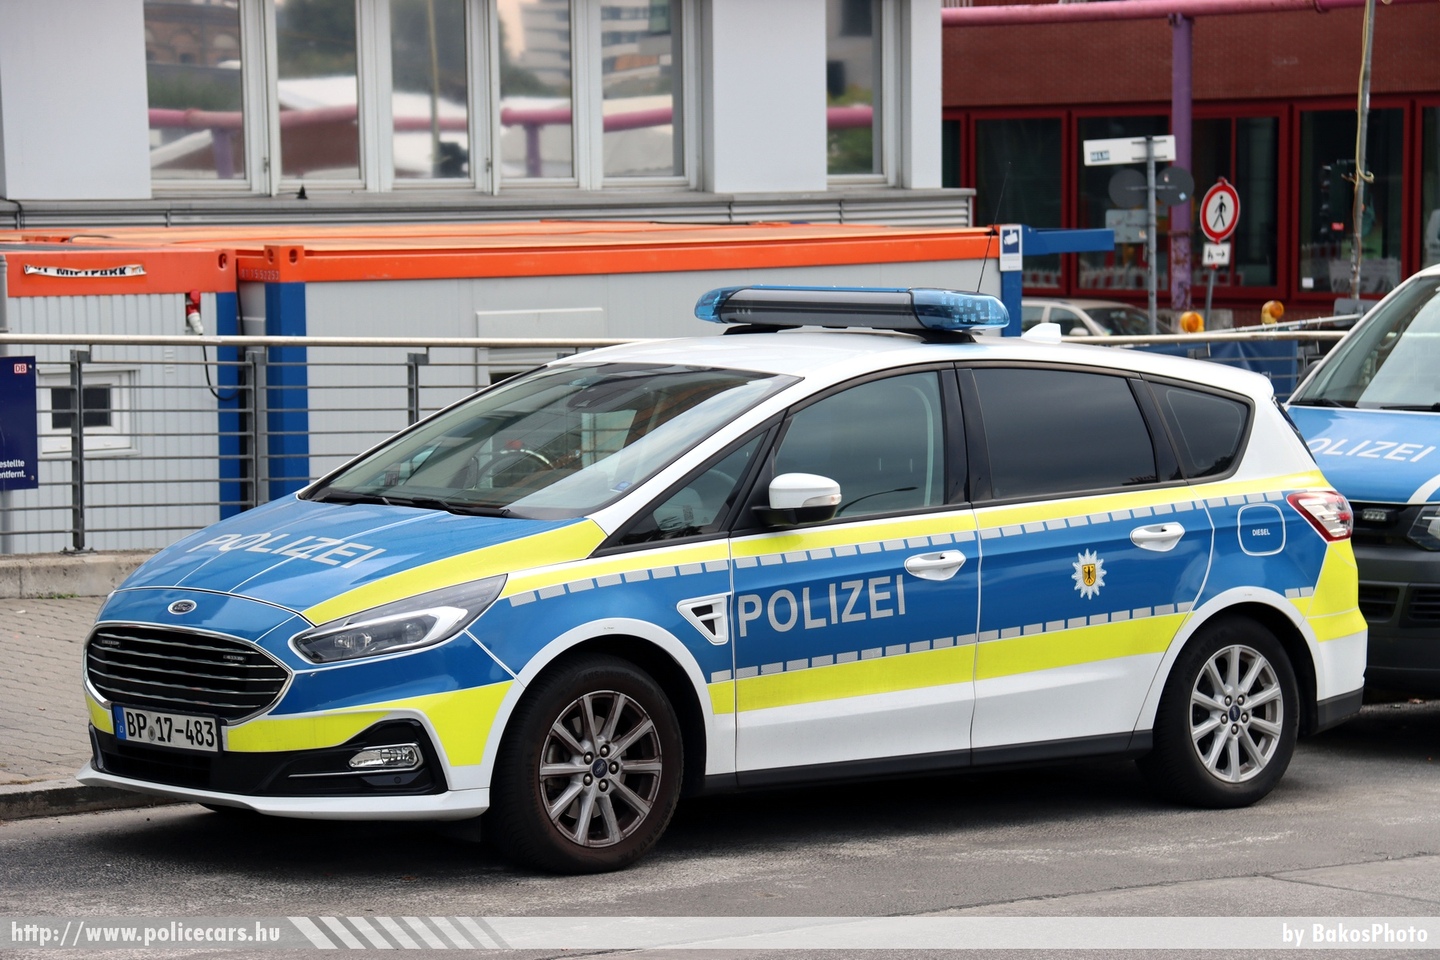 Ford S-Max 2.0 EcoBlue, Bundespolizei, Berlin, fotó: BakosPhoto
Keywords: német Németország rendőr rendőrautó rendőrség german Germany police policecar